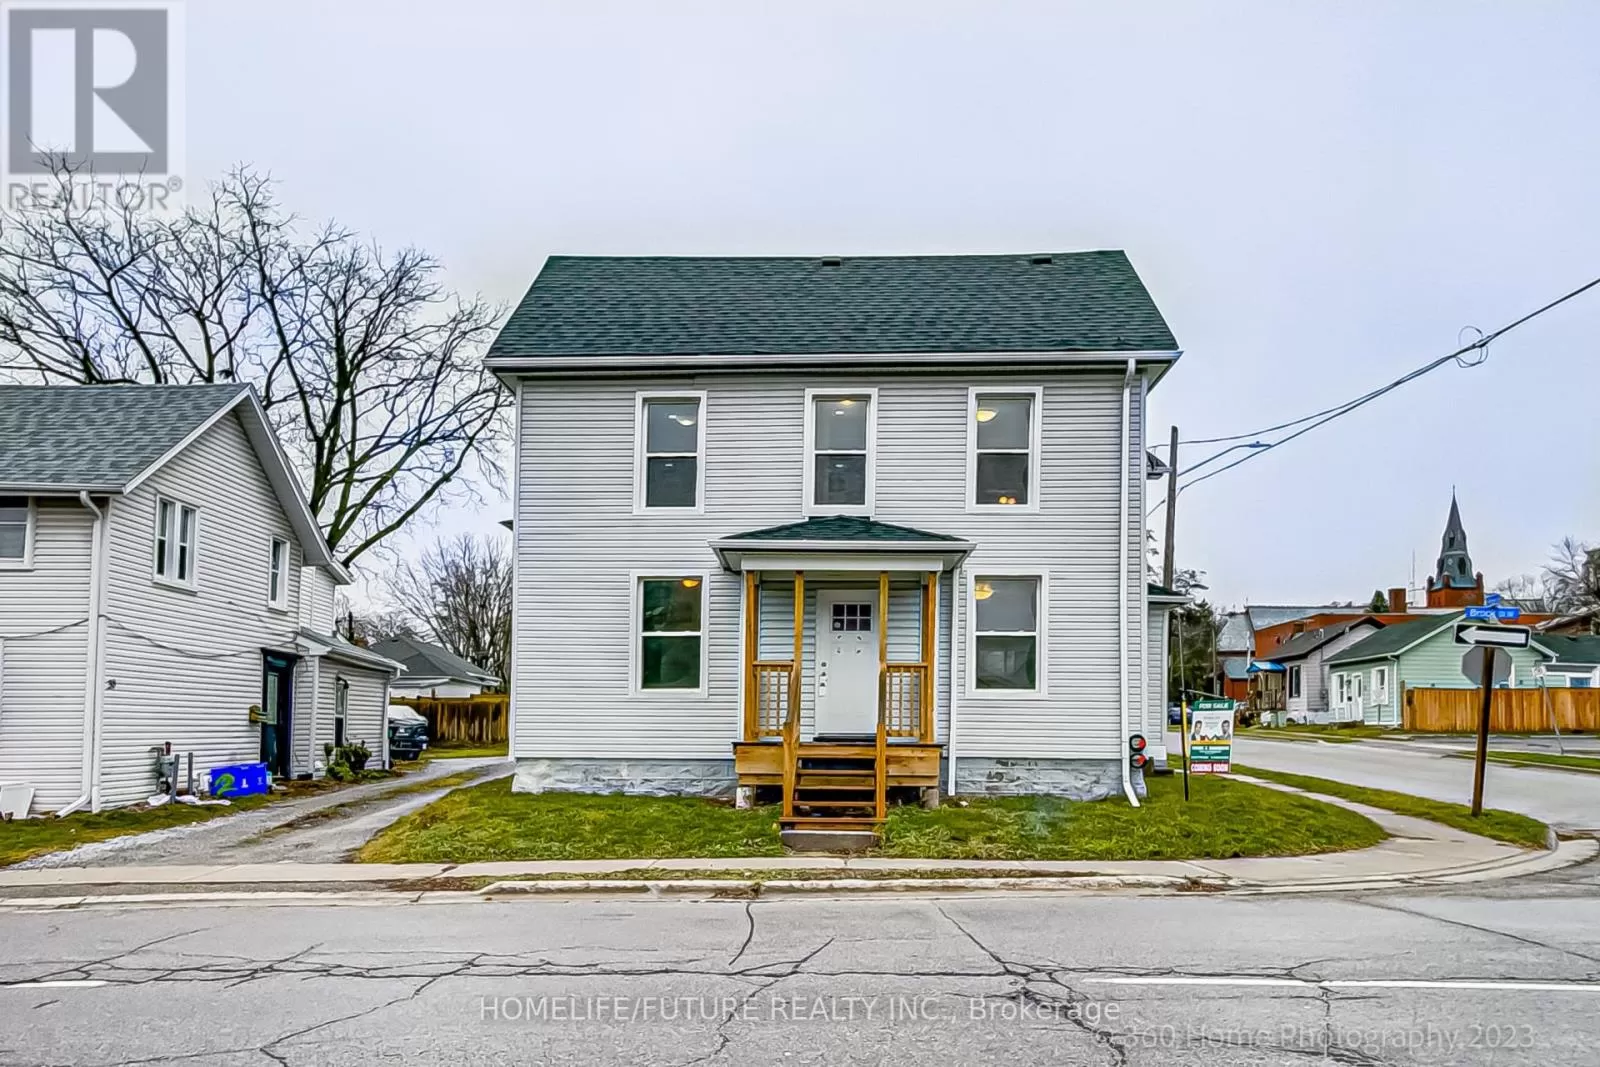 Triplex for rent: 32 Brock St W, Oshawa, Ontario L1G 1R4